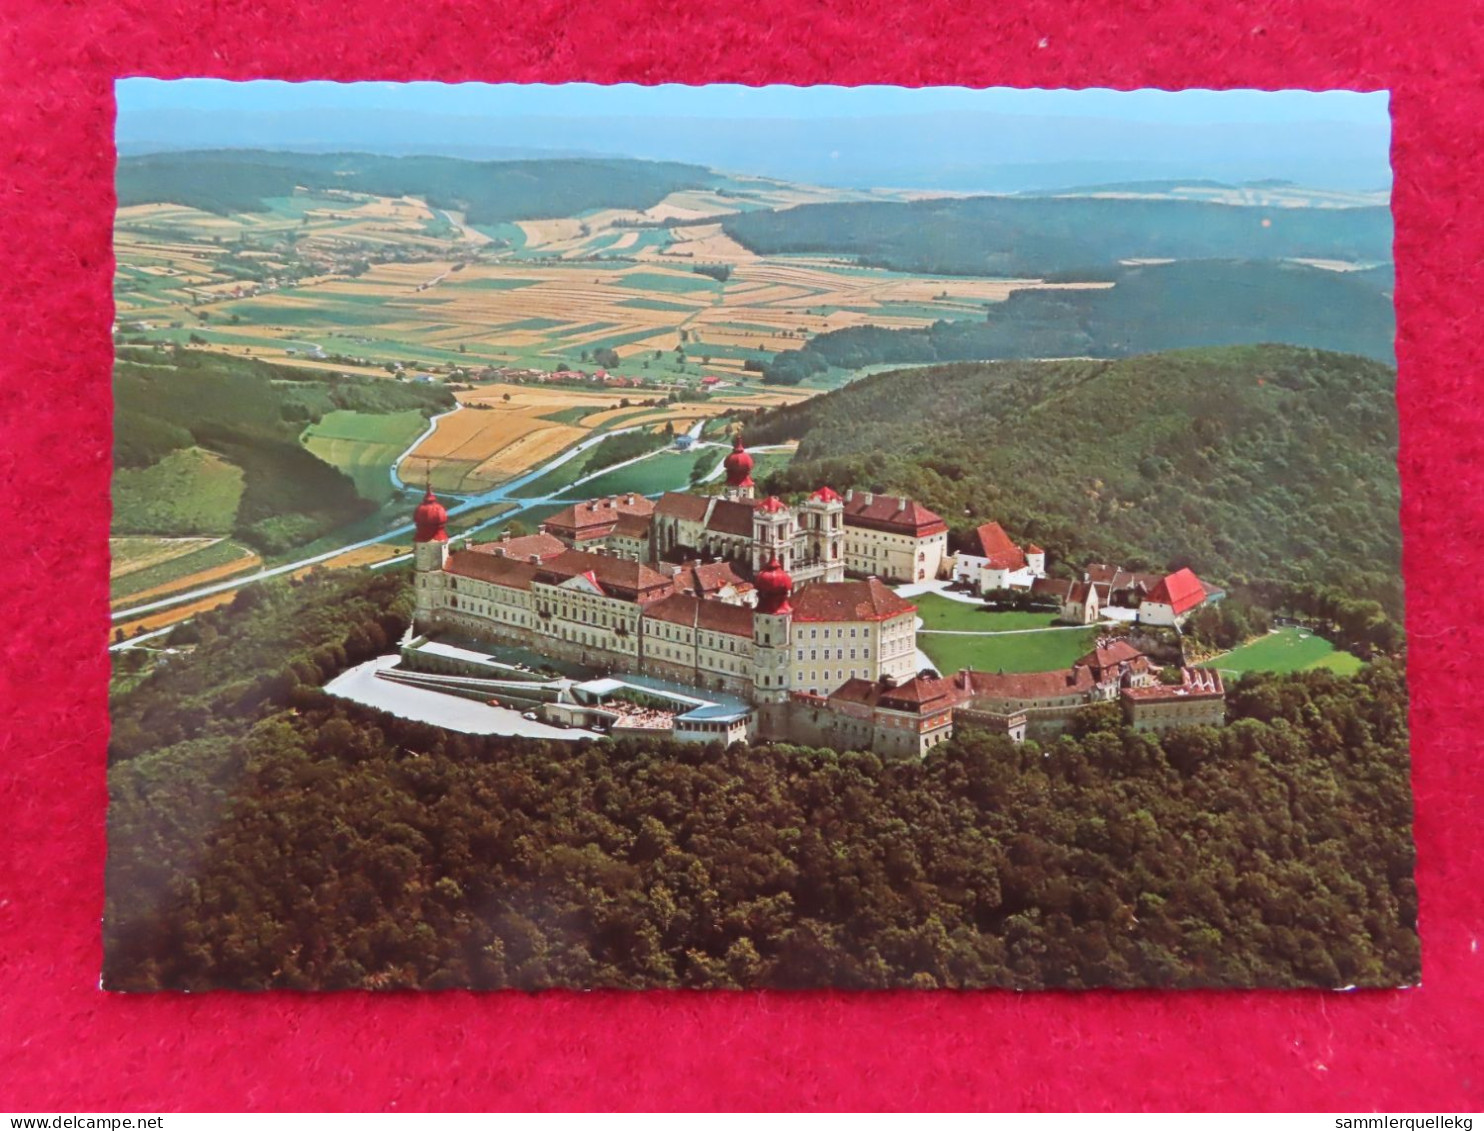 AK: Benediktinerstift Göttweig In Der Wachau, Ungelaufen (Nr.3087) - Wachau